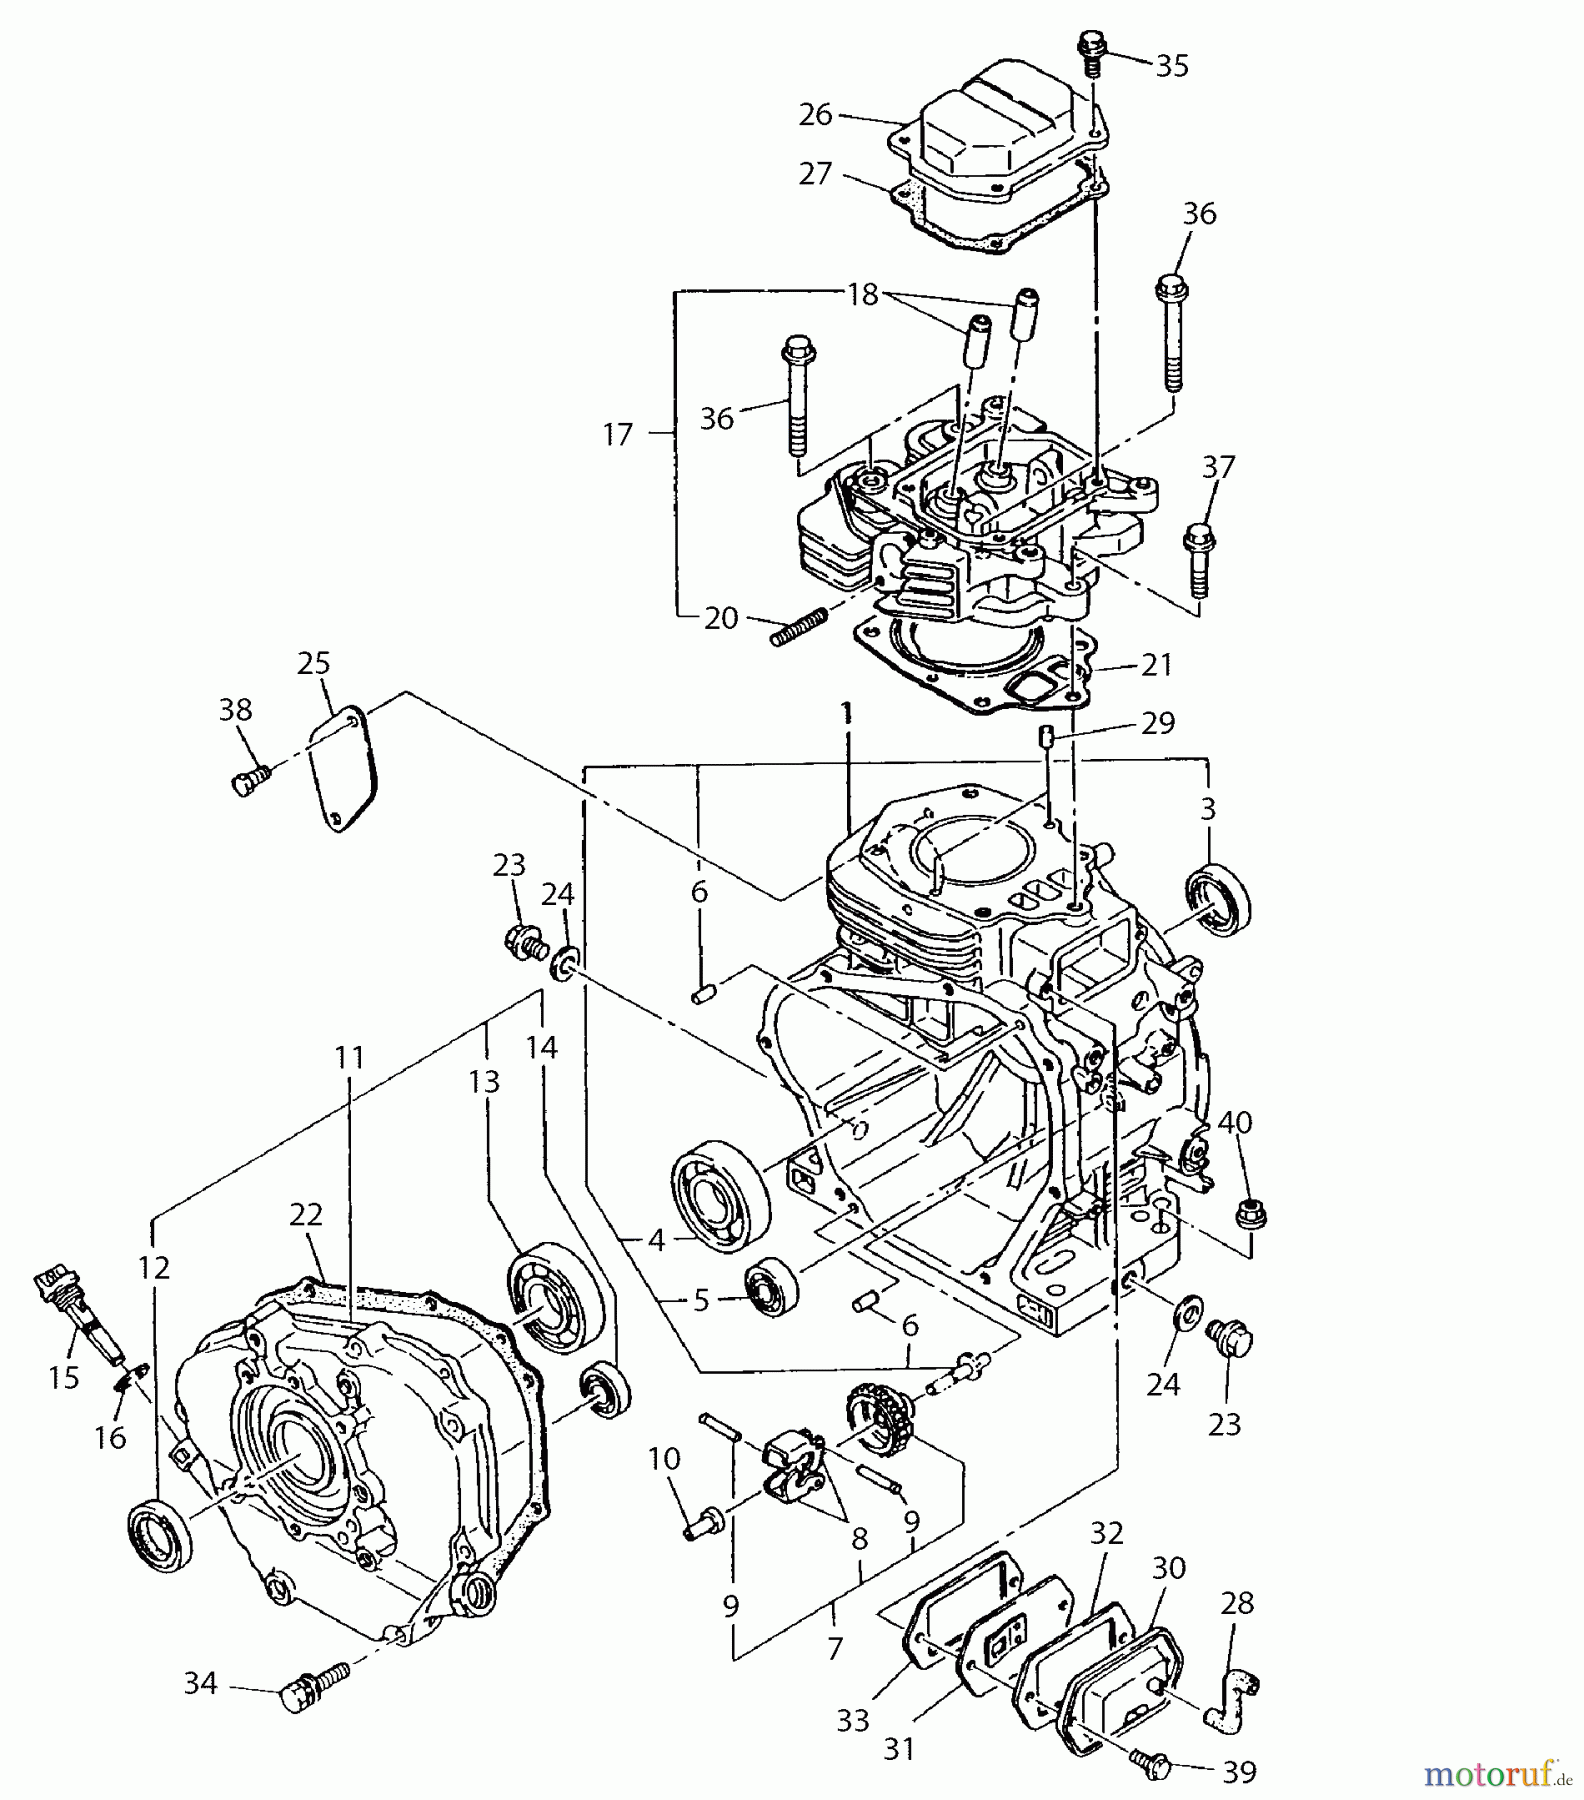  Dolmar Stromerzeuger GE-5800 (USA) 6  Kurbelgehäuse, Zylinder